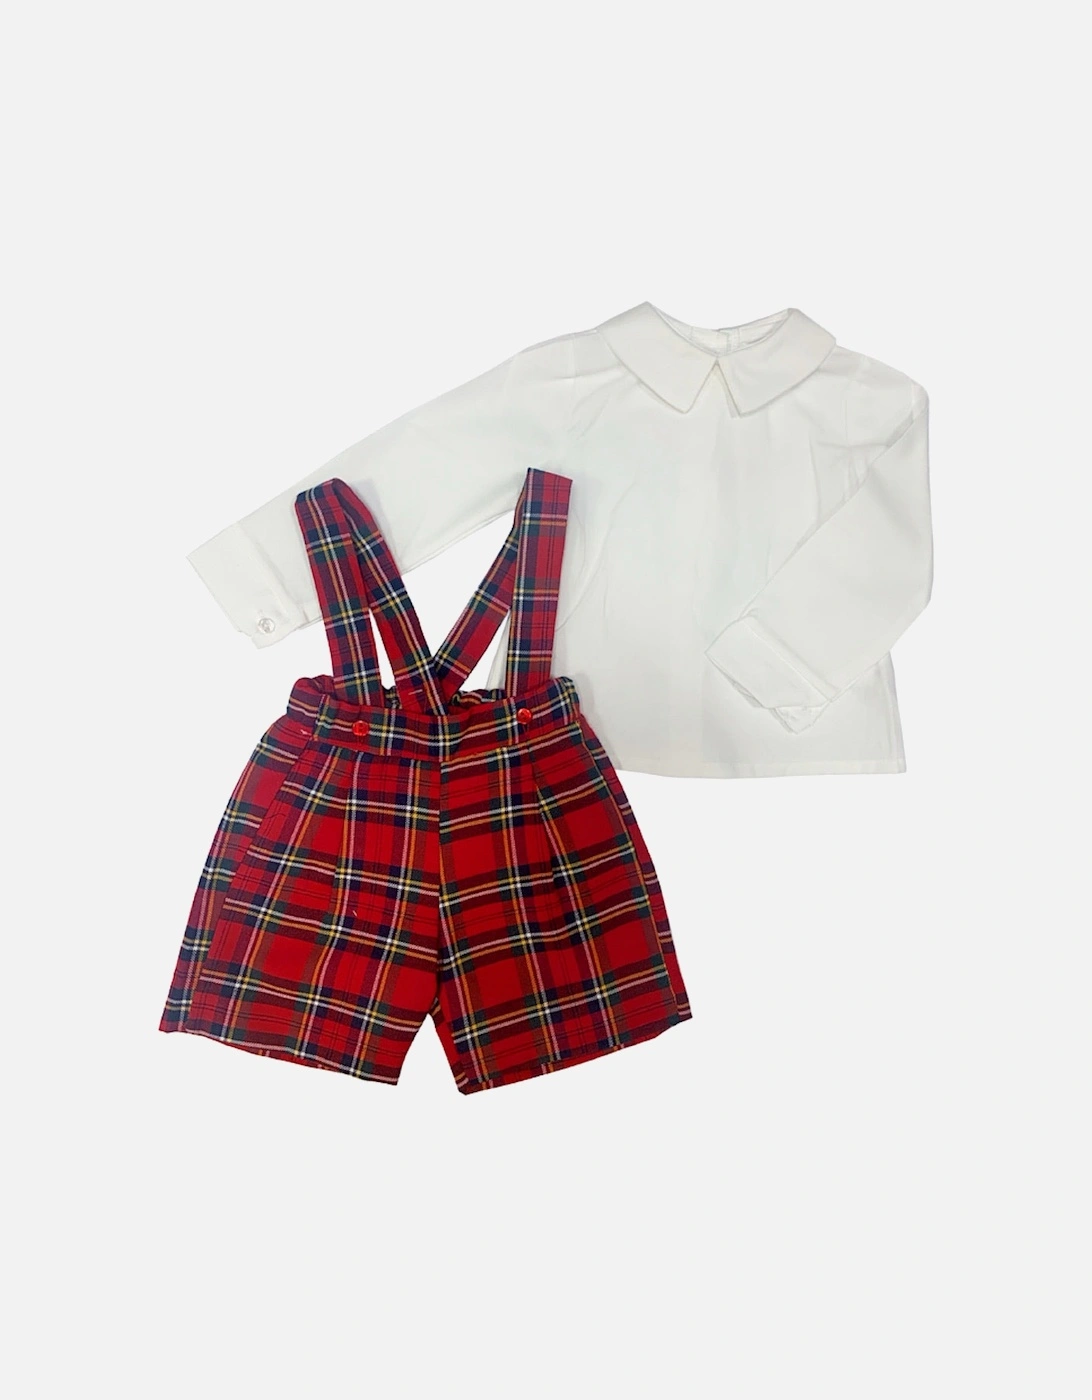 Boys Tartan Outfit Set, 2 of 1